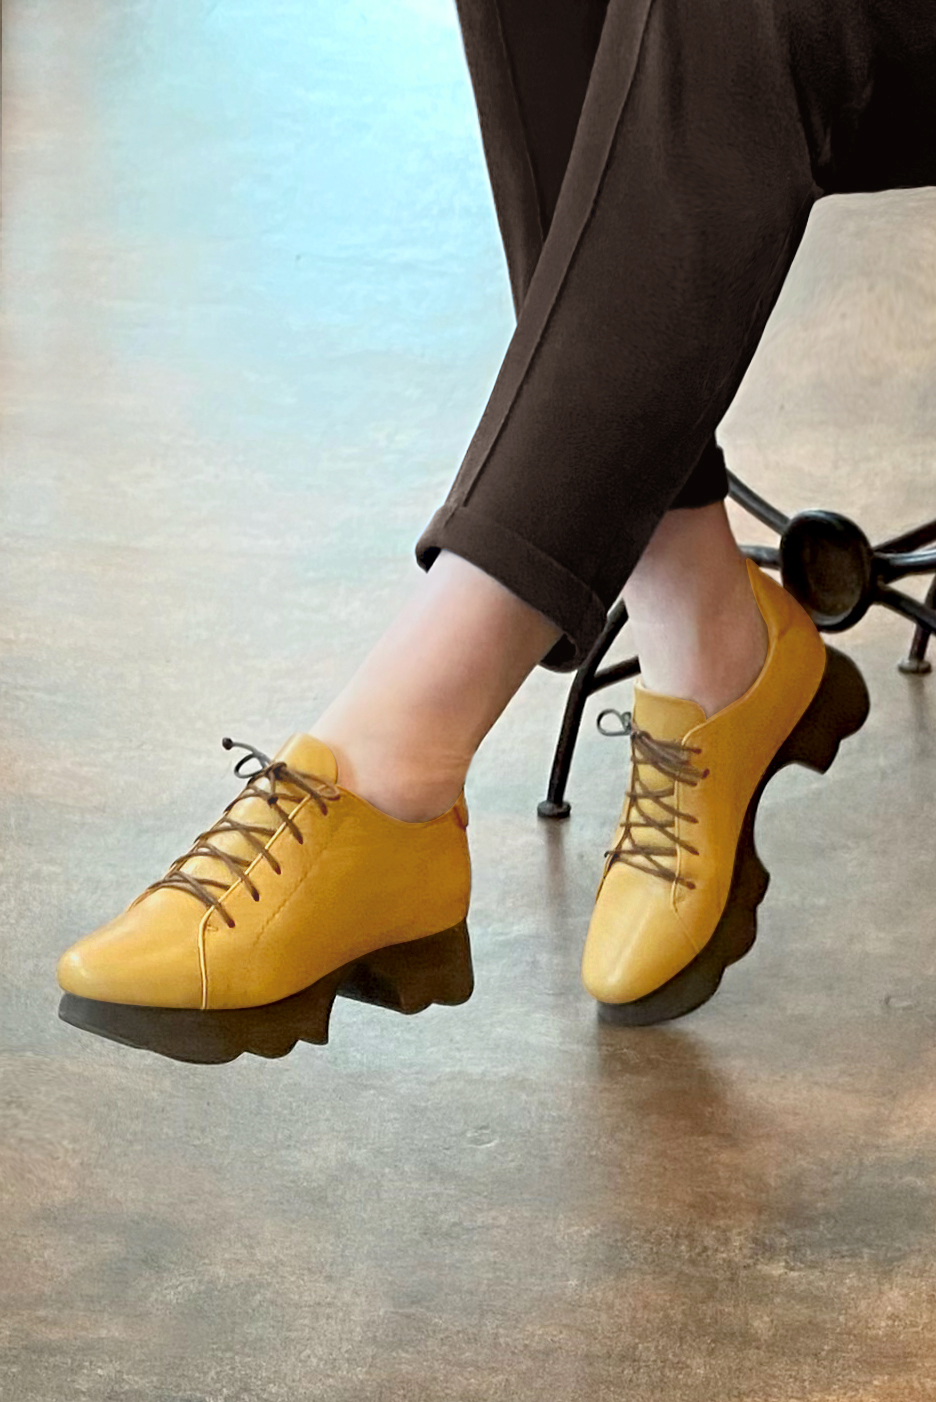 Chaussure femme à lacets : Derby sport couleur jaune ocre.. Vue porté - Florence KOOIJMAN